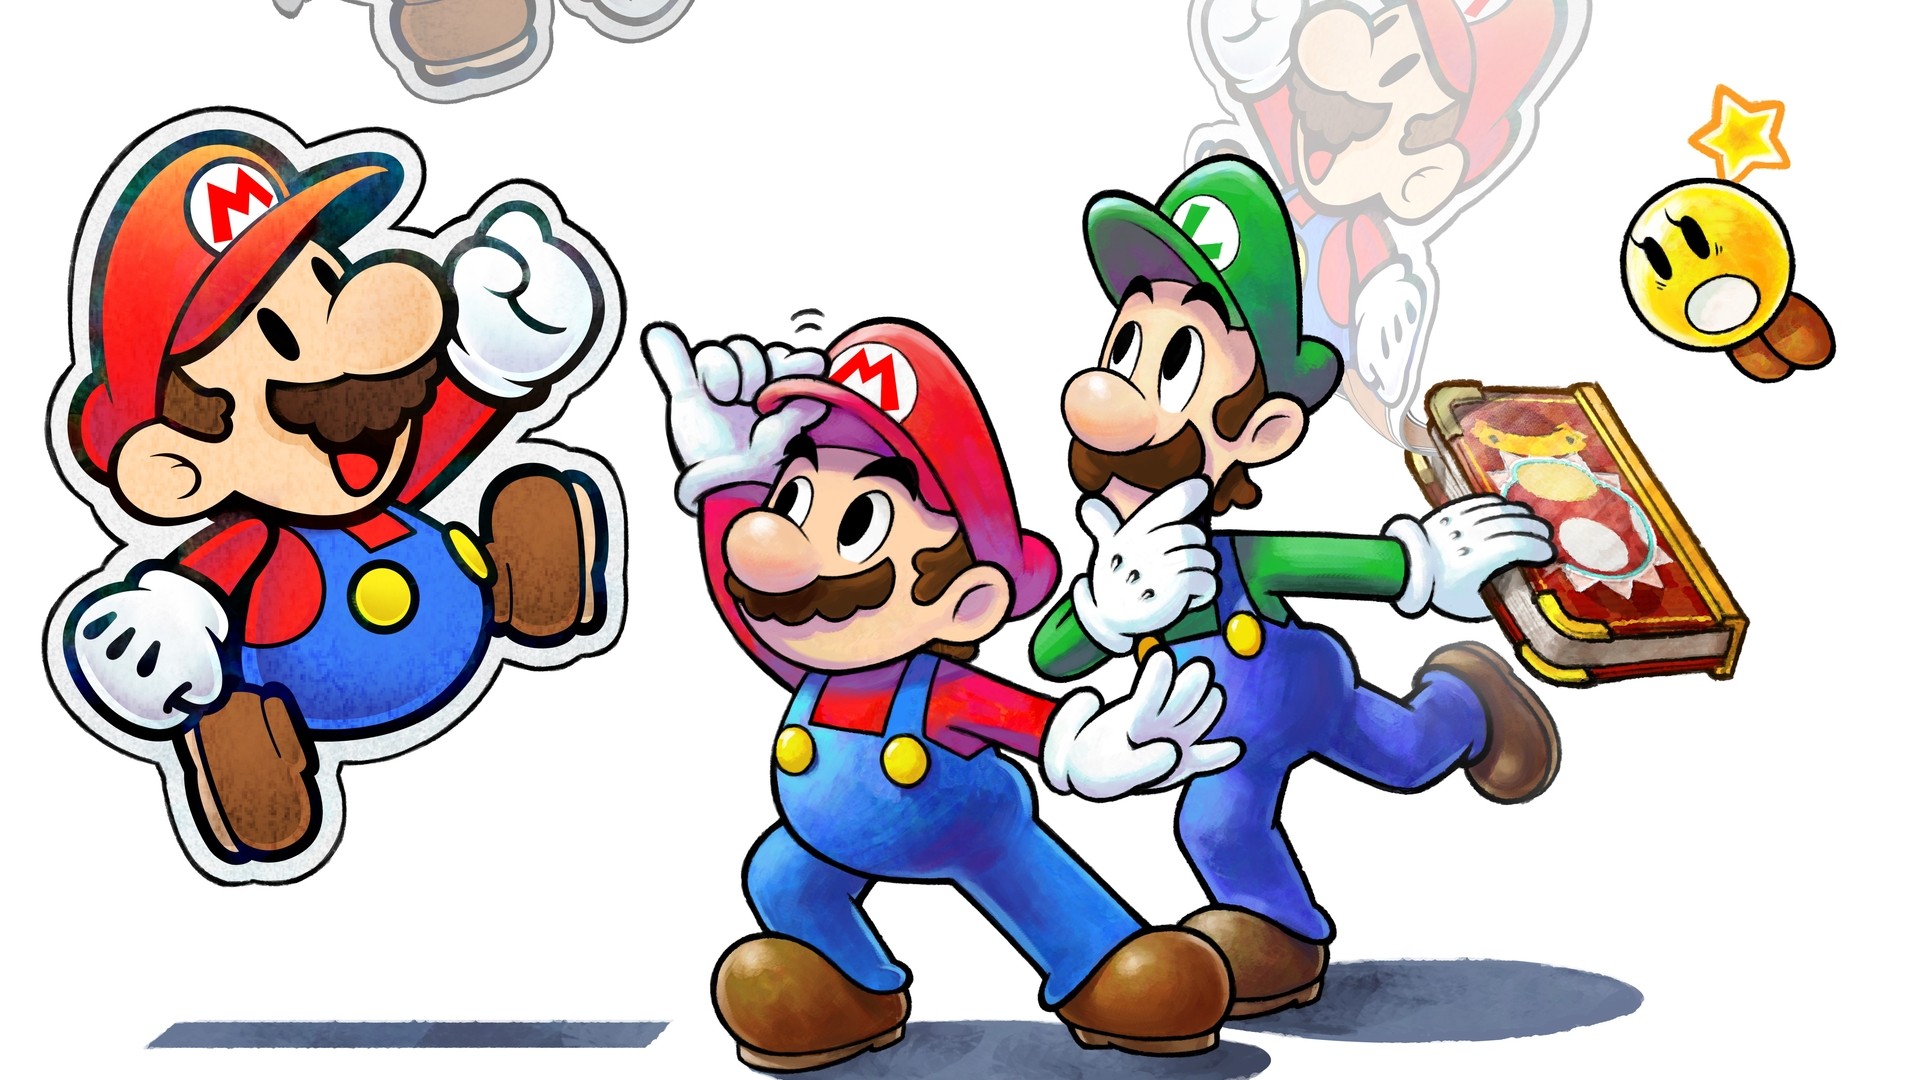 Mario new life. Марио и Луиджи игра. Супер Марио БРОС Луиджи. Марио Пейпер Марио. Папер Марио Луиджи.